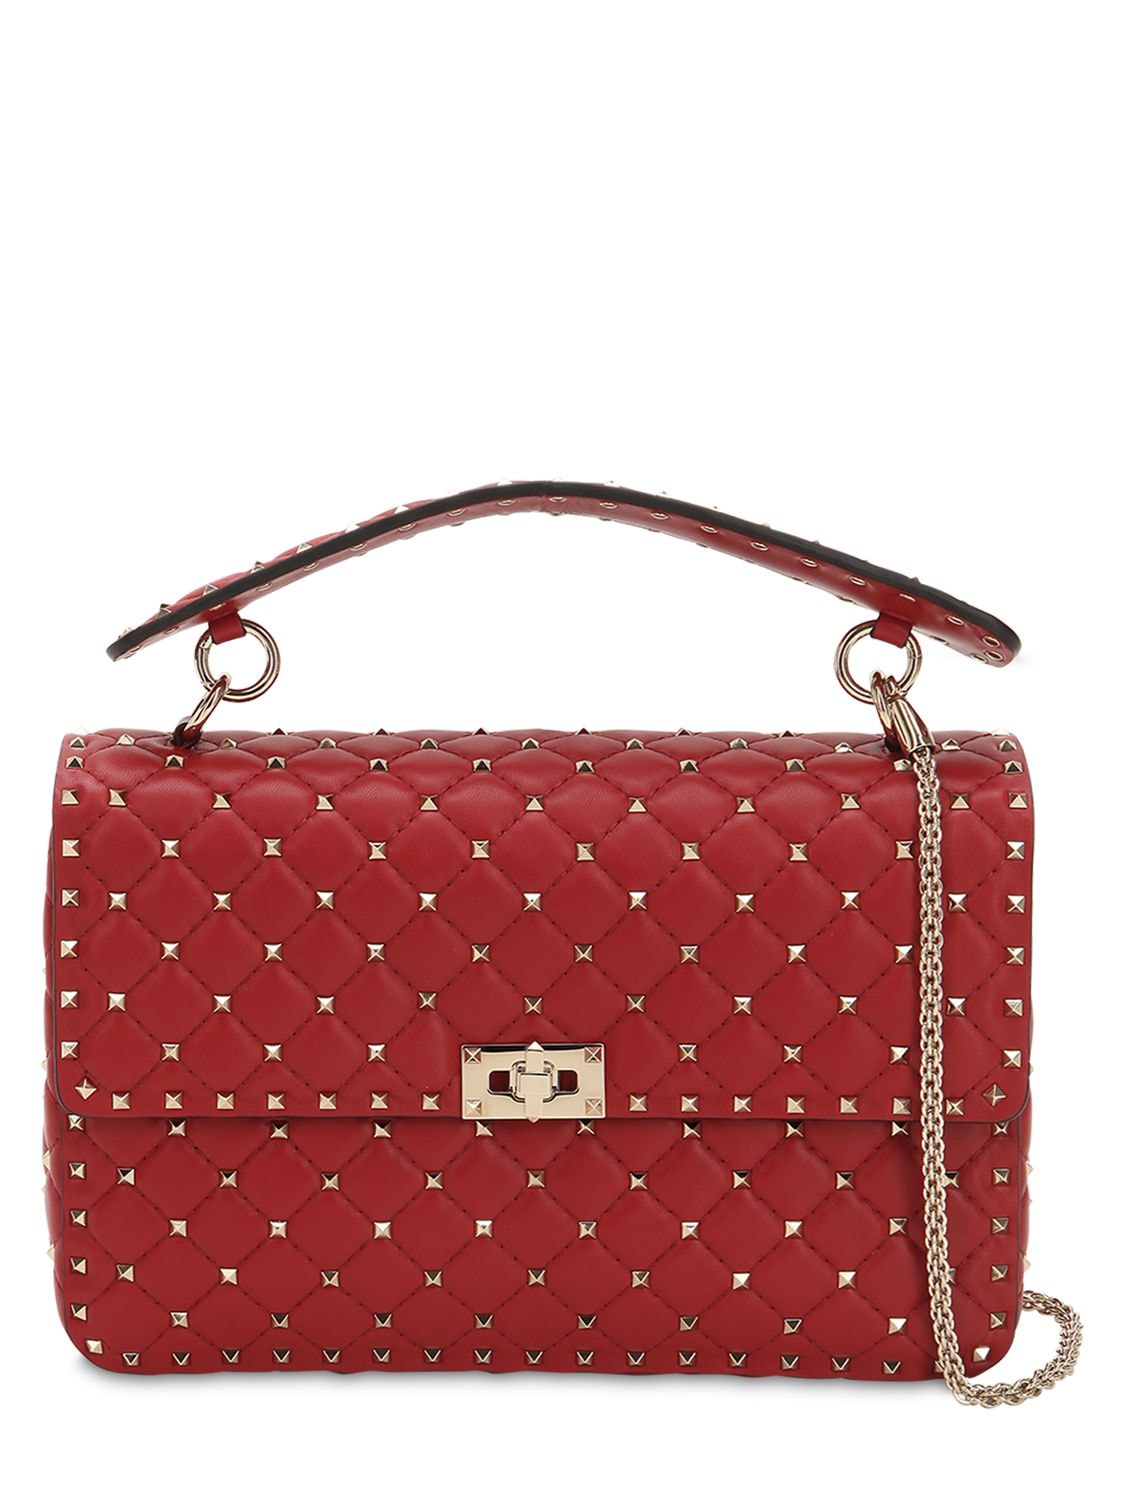 Valentino Garavani Spike Embellished Leather Bag In Red